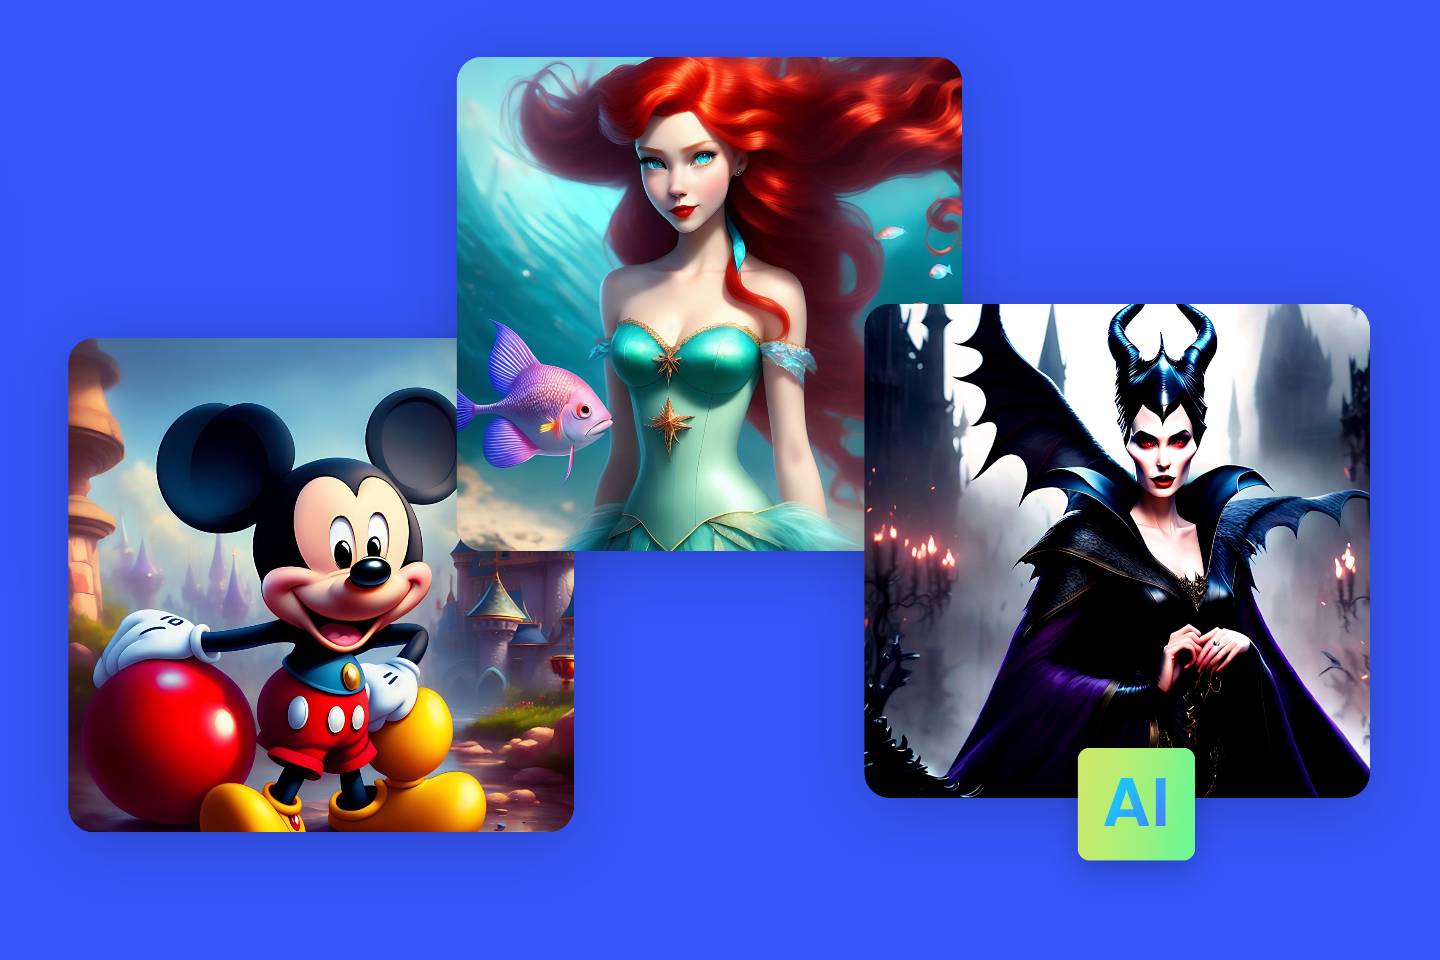 Trois personnages Disney générés à l'air libre, y compris Mickey Mouse, la princesse Ariel et Maléfique.